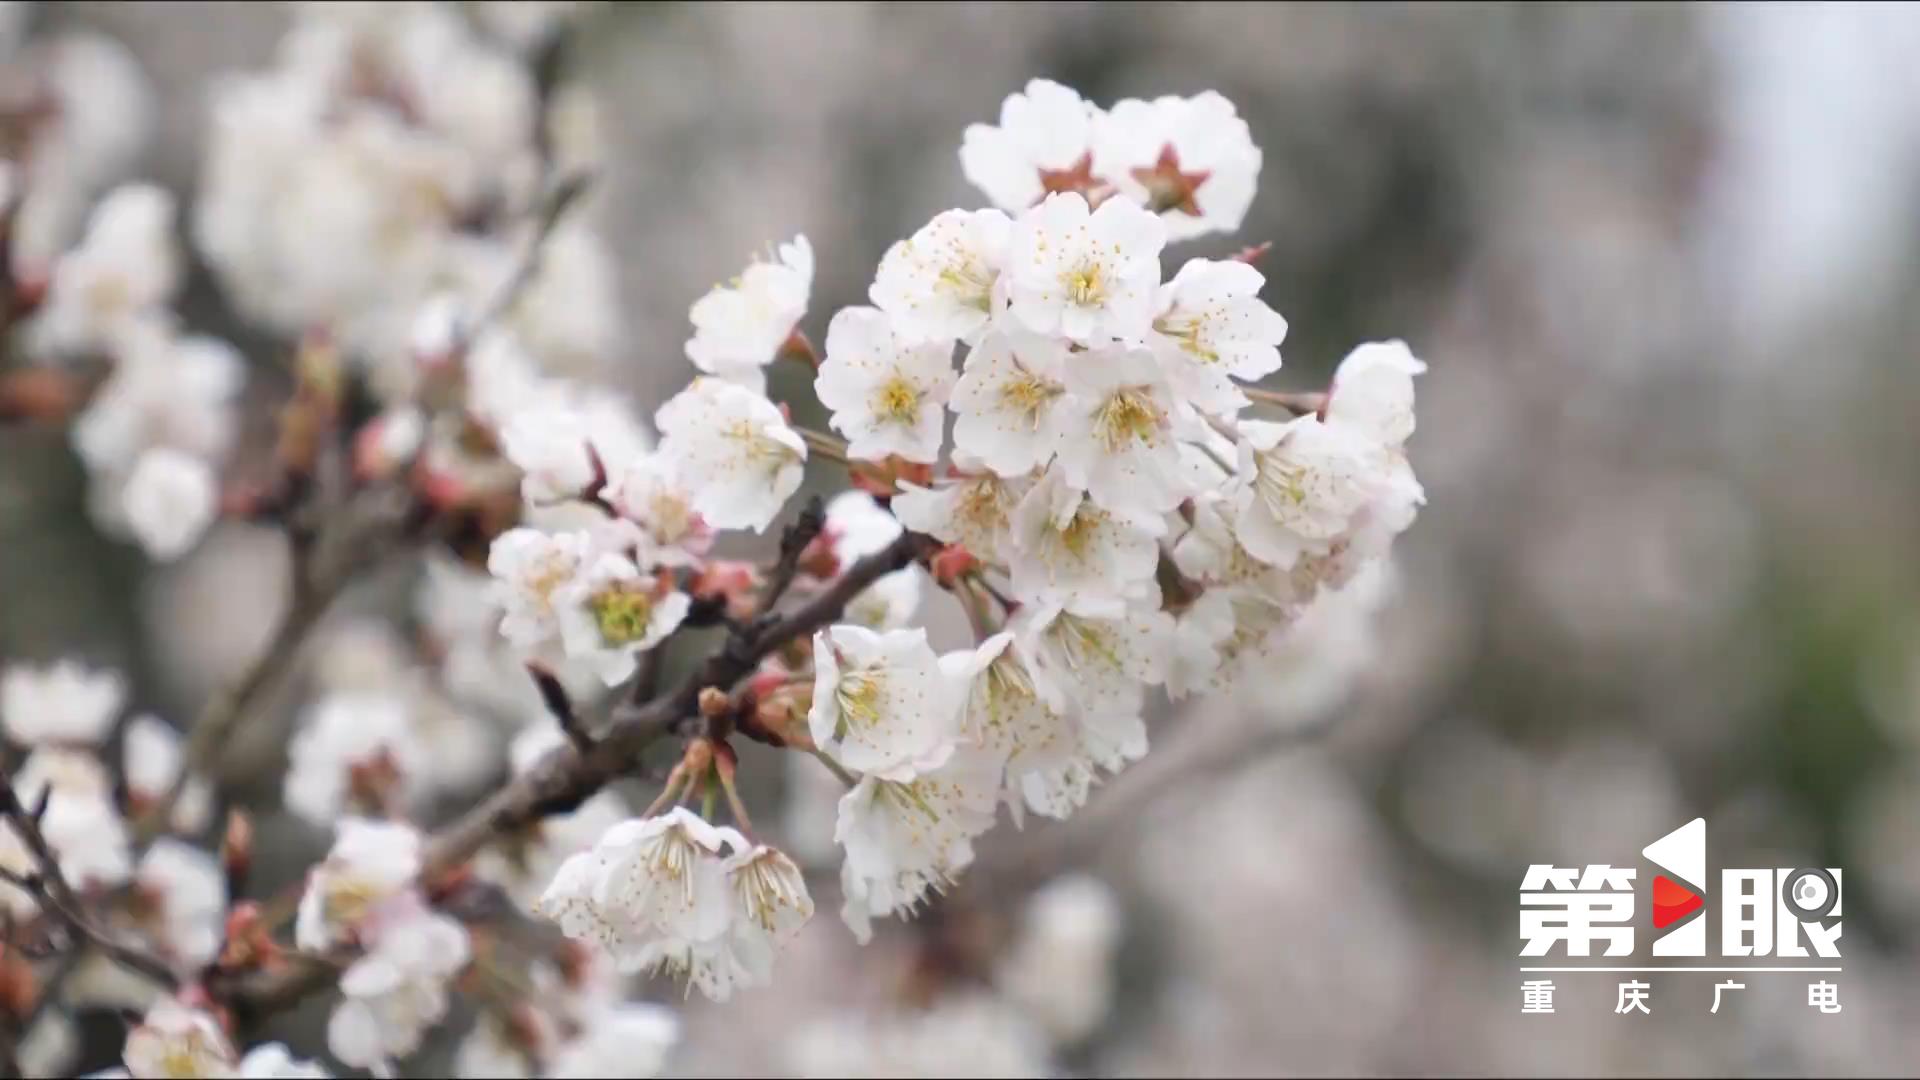 Tongliang: 6,000 mu of cherry blossoms 3